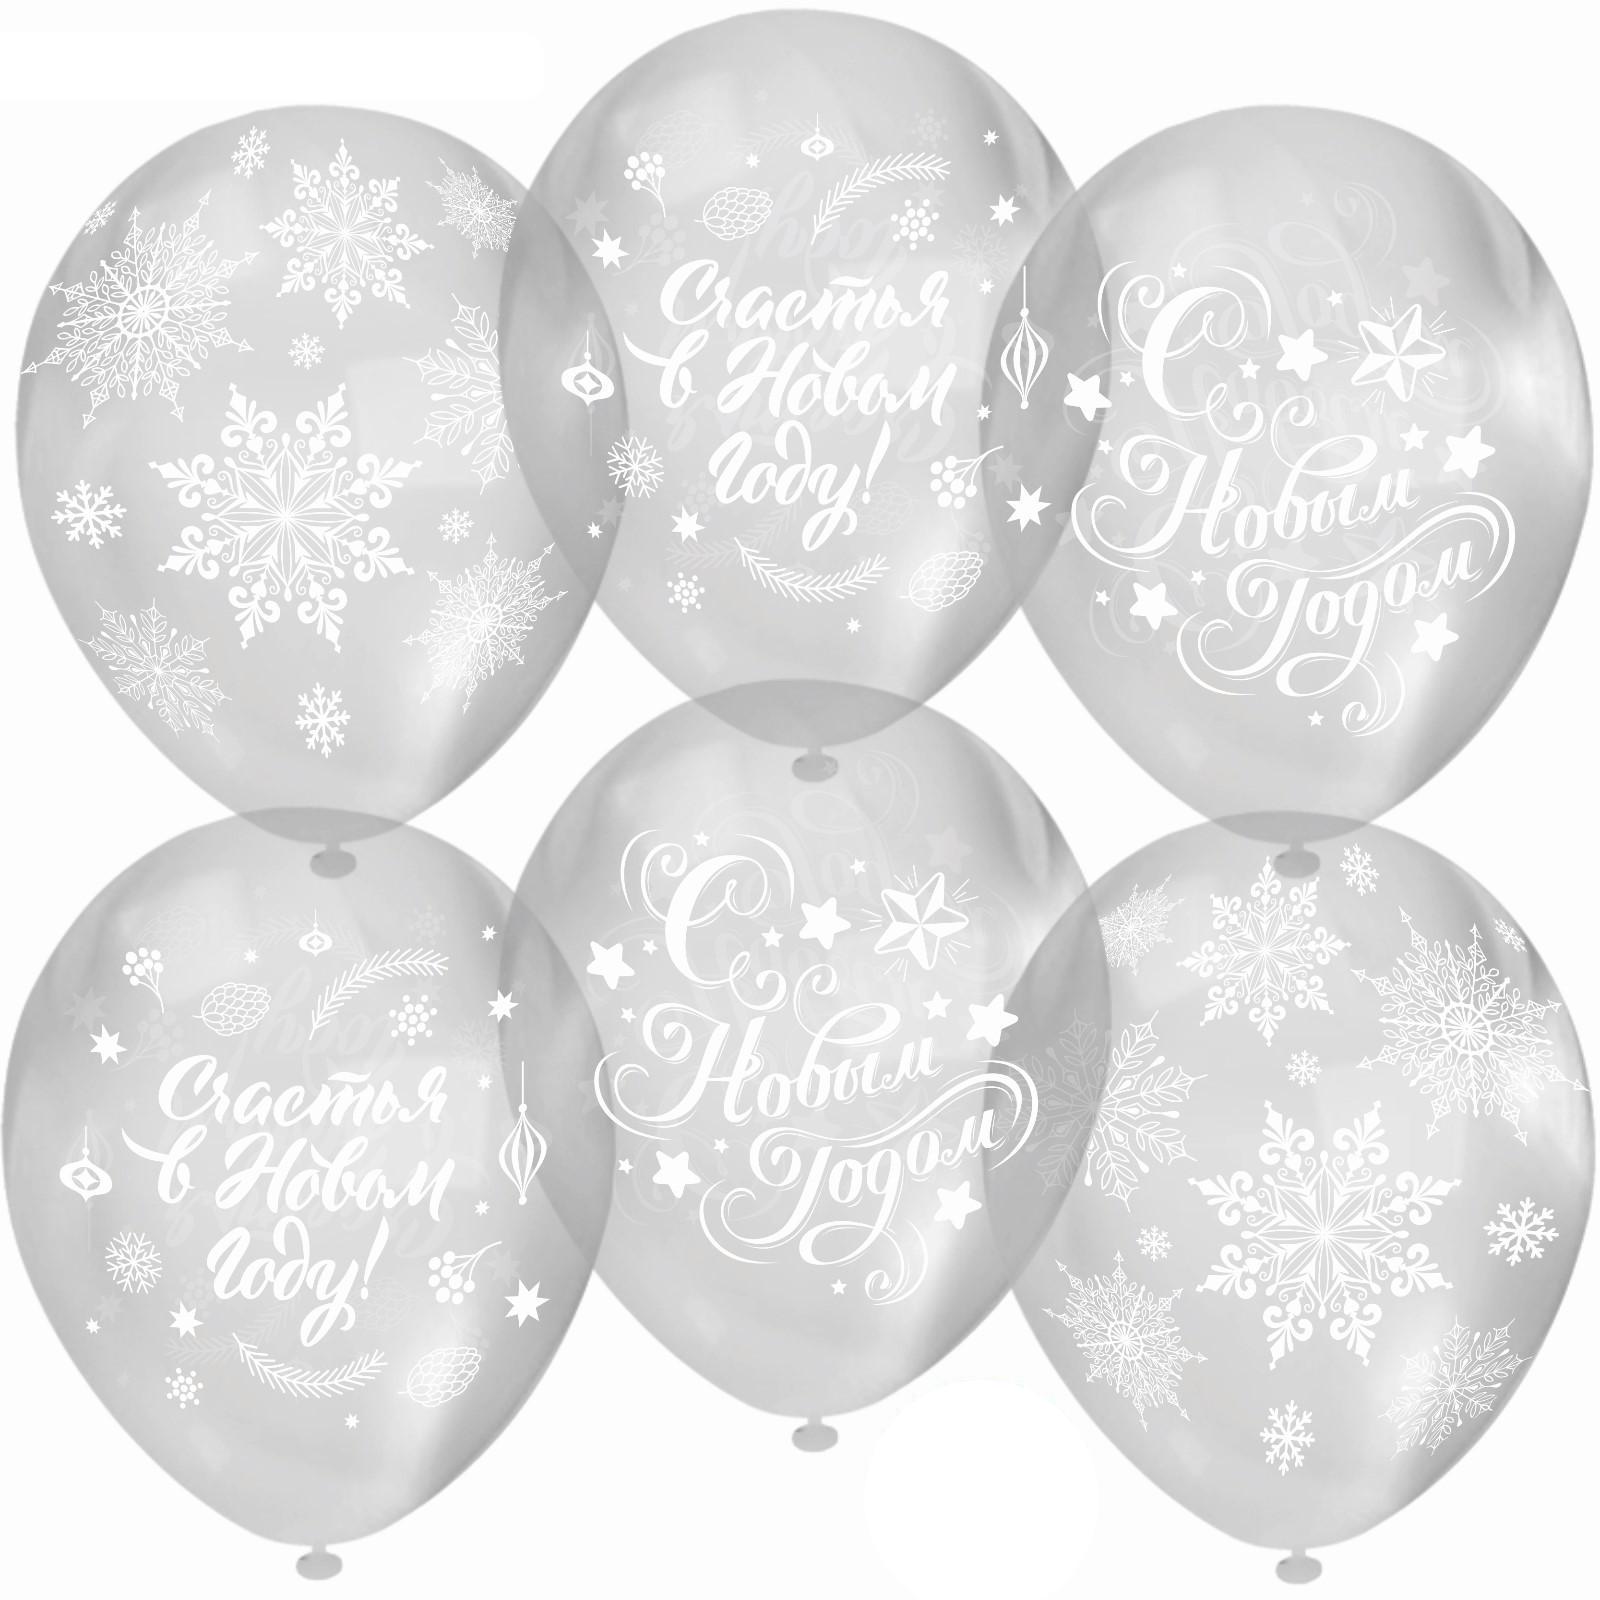 фото Шар латексный 12 счастья в новом году!, прозрачный, кристалл, 5-сторонний, набор 50 шт. орбиталь